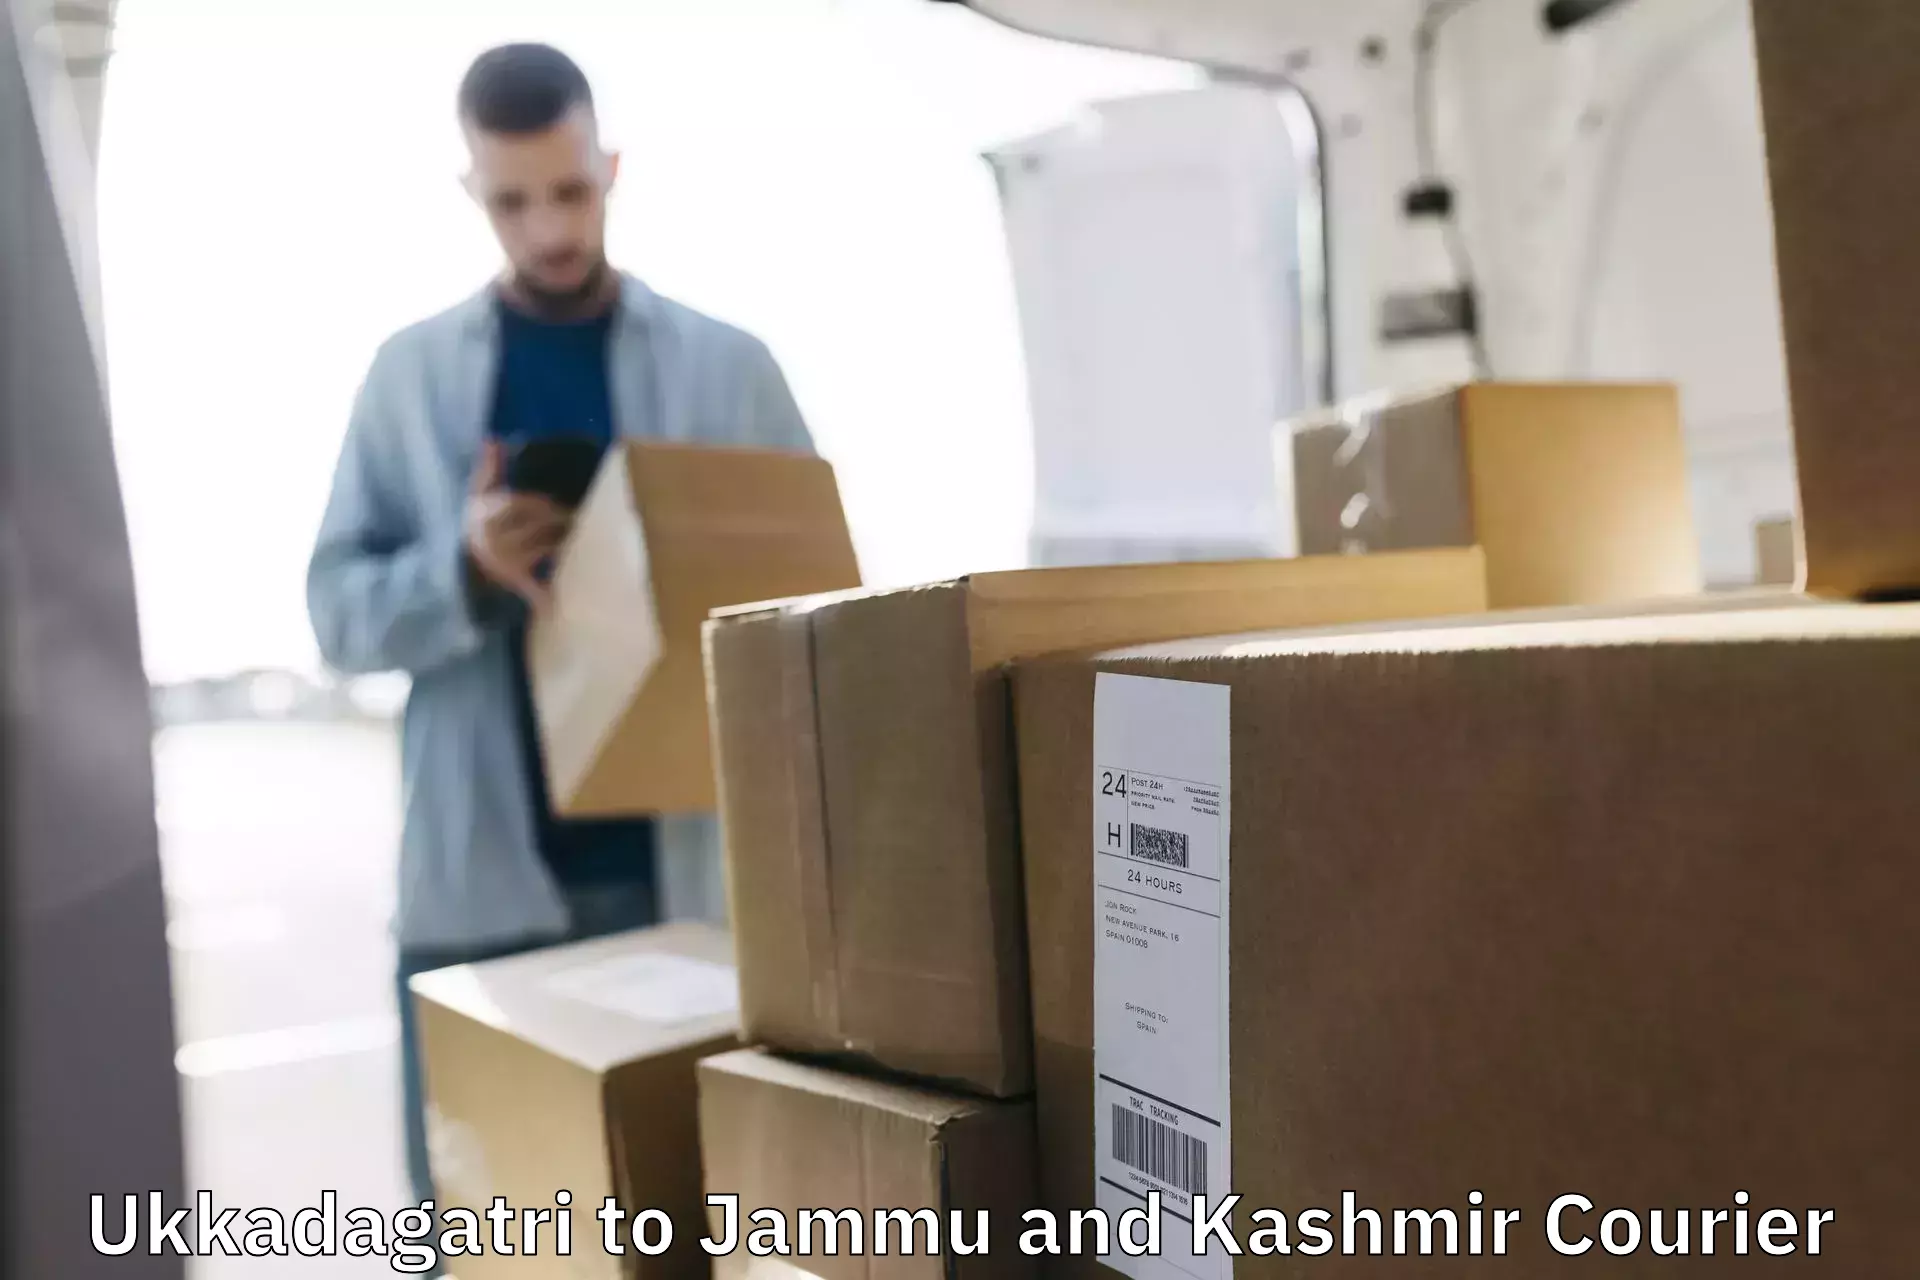 Door-to-door shipment in Ukkadagatri to Jammu and Kashmir